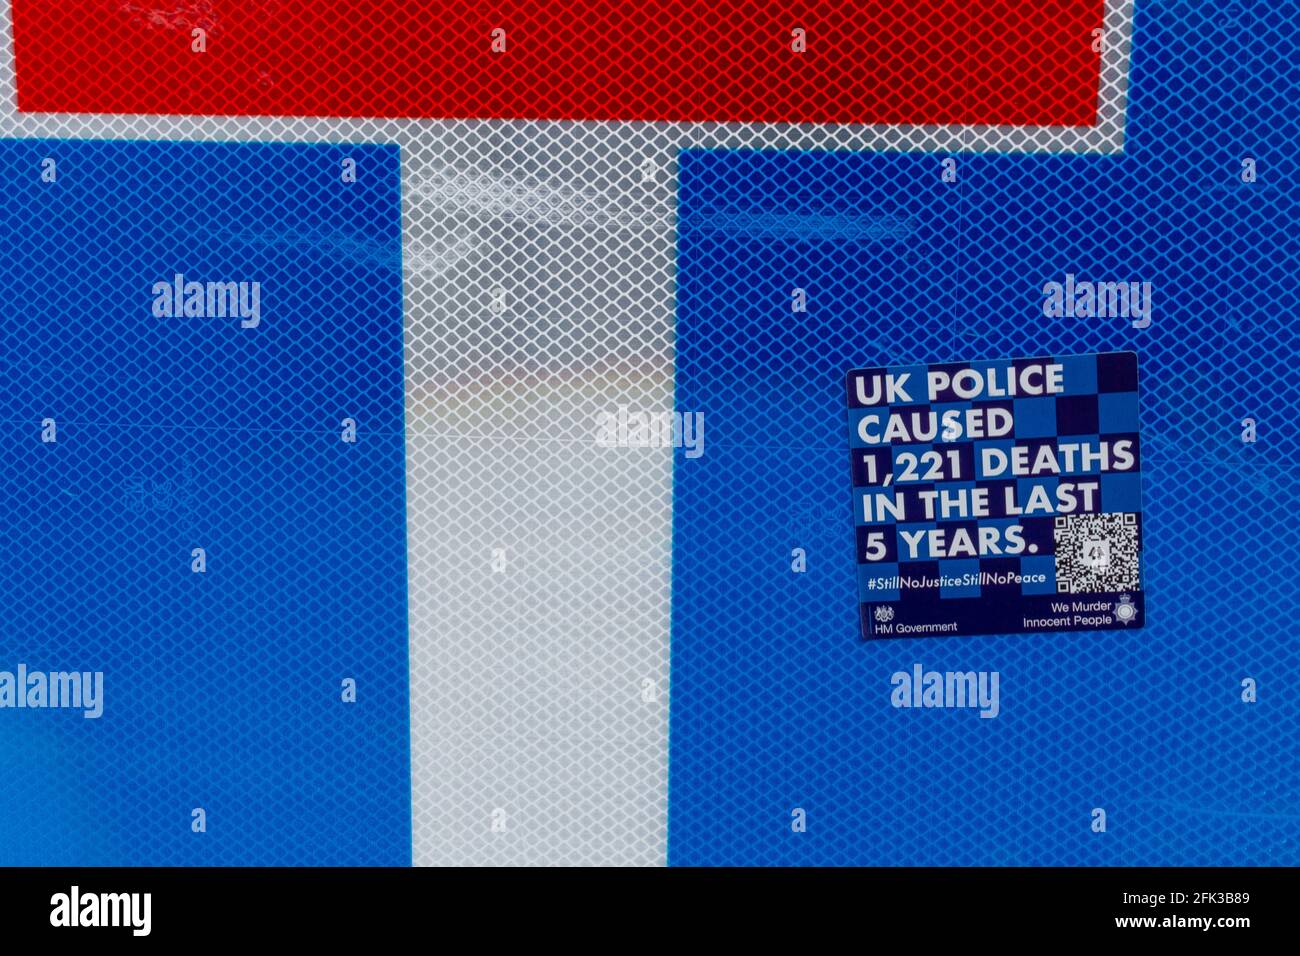 Una pegatina azul contra la policía en una señal de tráfico que afirma que la policía del Reino Unido ha causado 1221 muertes en los últimos cinco años. Foto de stock